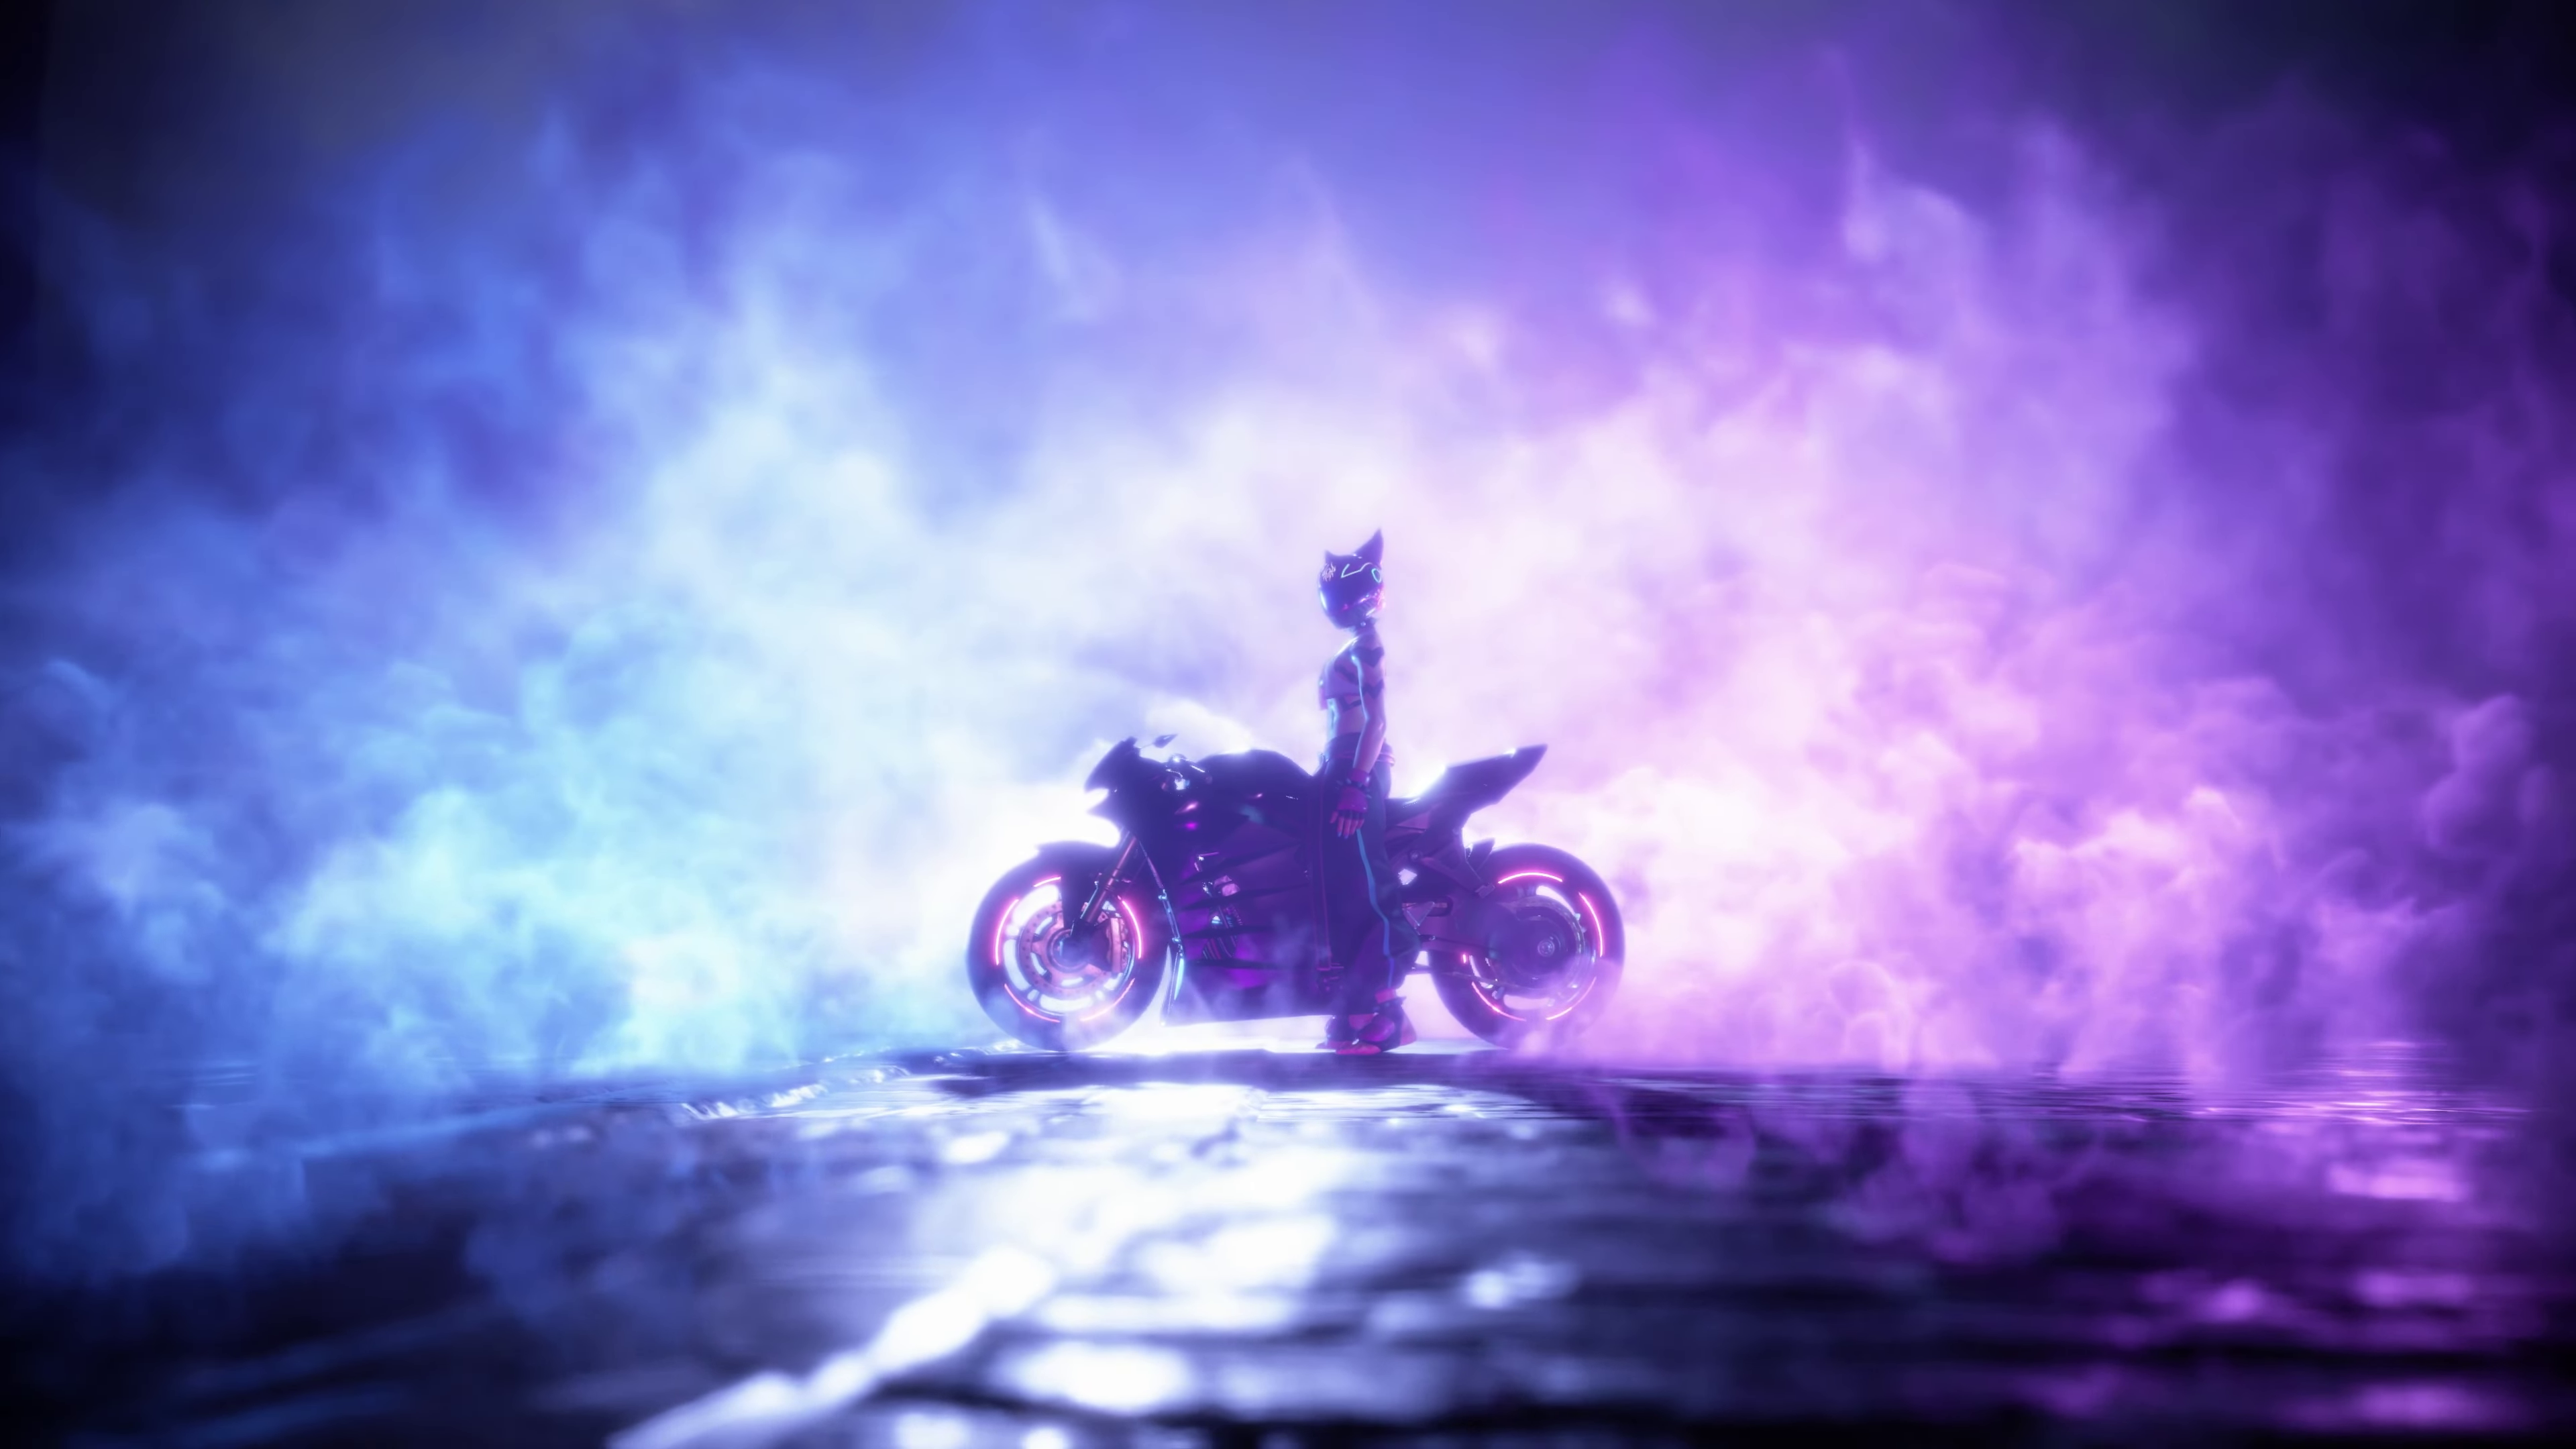 General 3840x2160 Han Juri Street Fighter video game characters digital art motorcycle vehicle helmet with horn helmet blue background purple background smoke side view